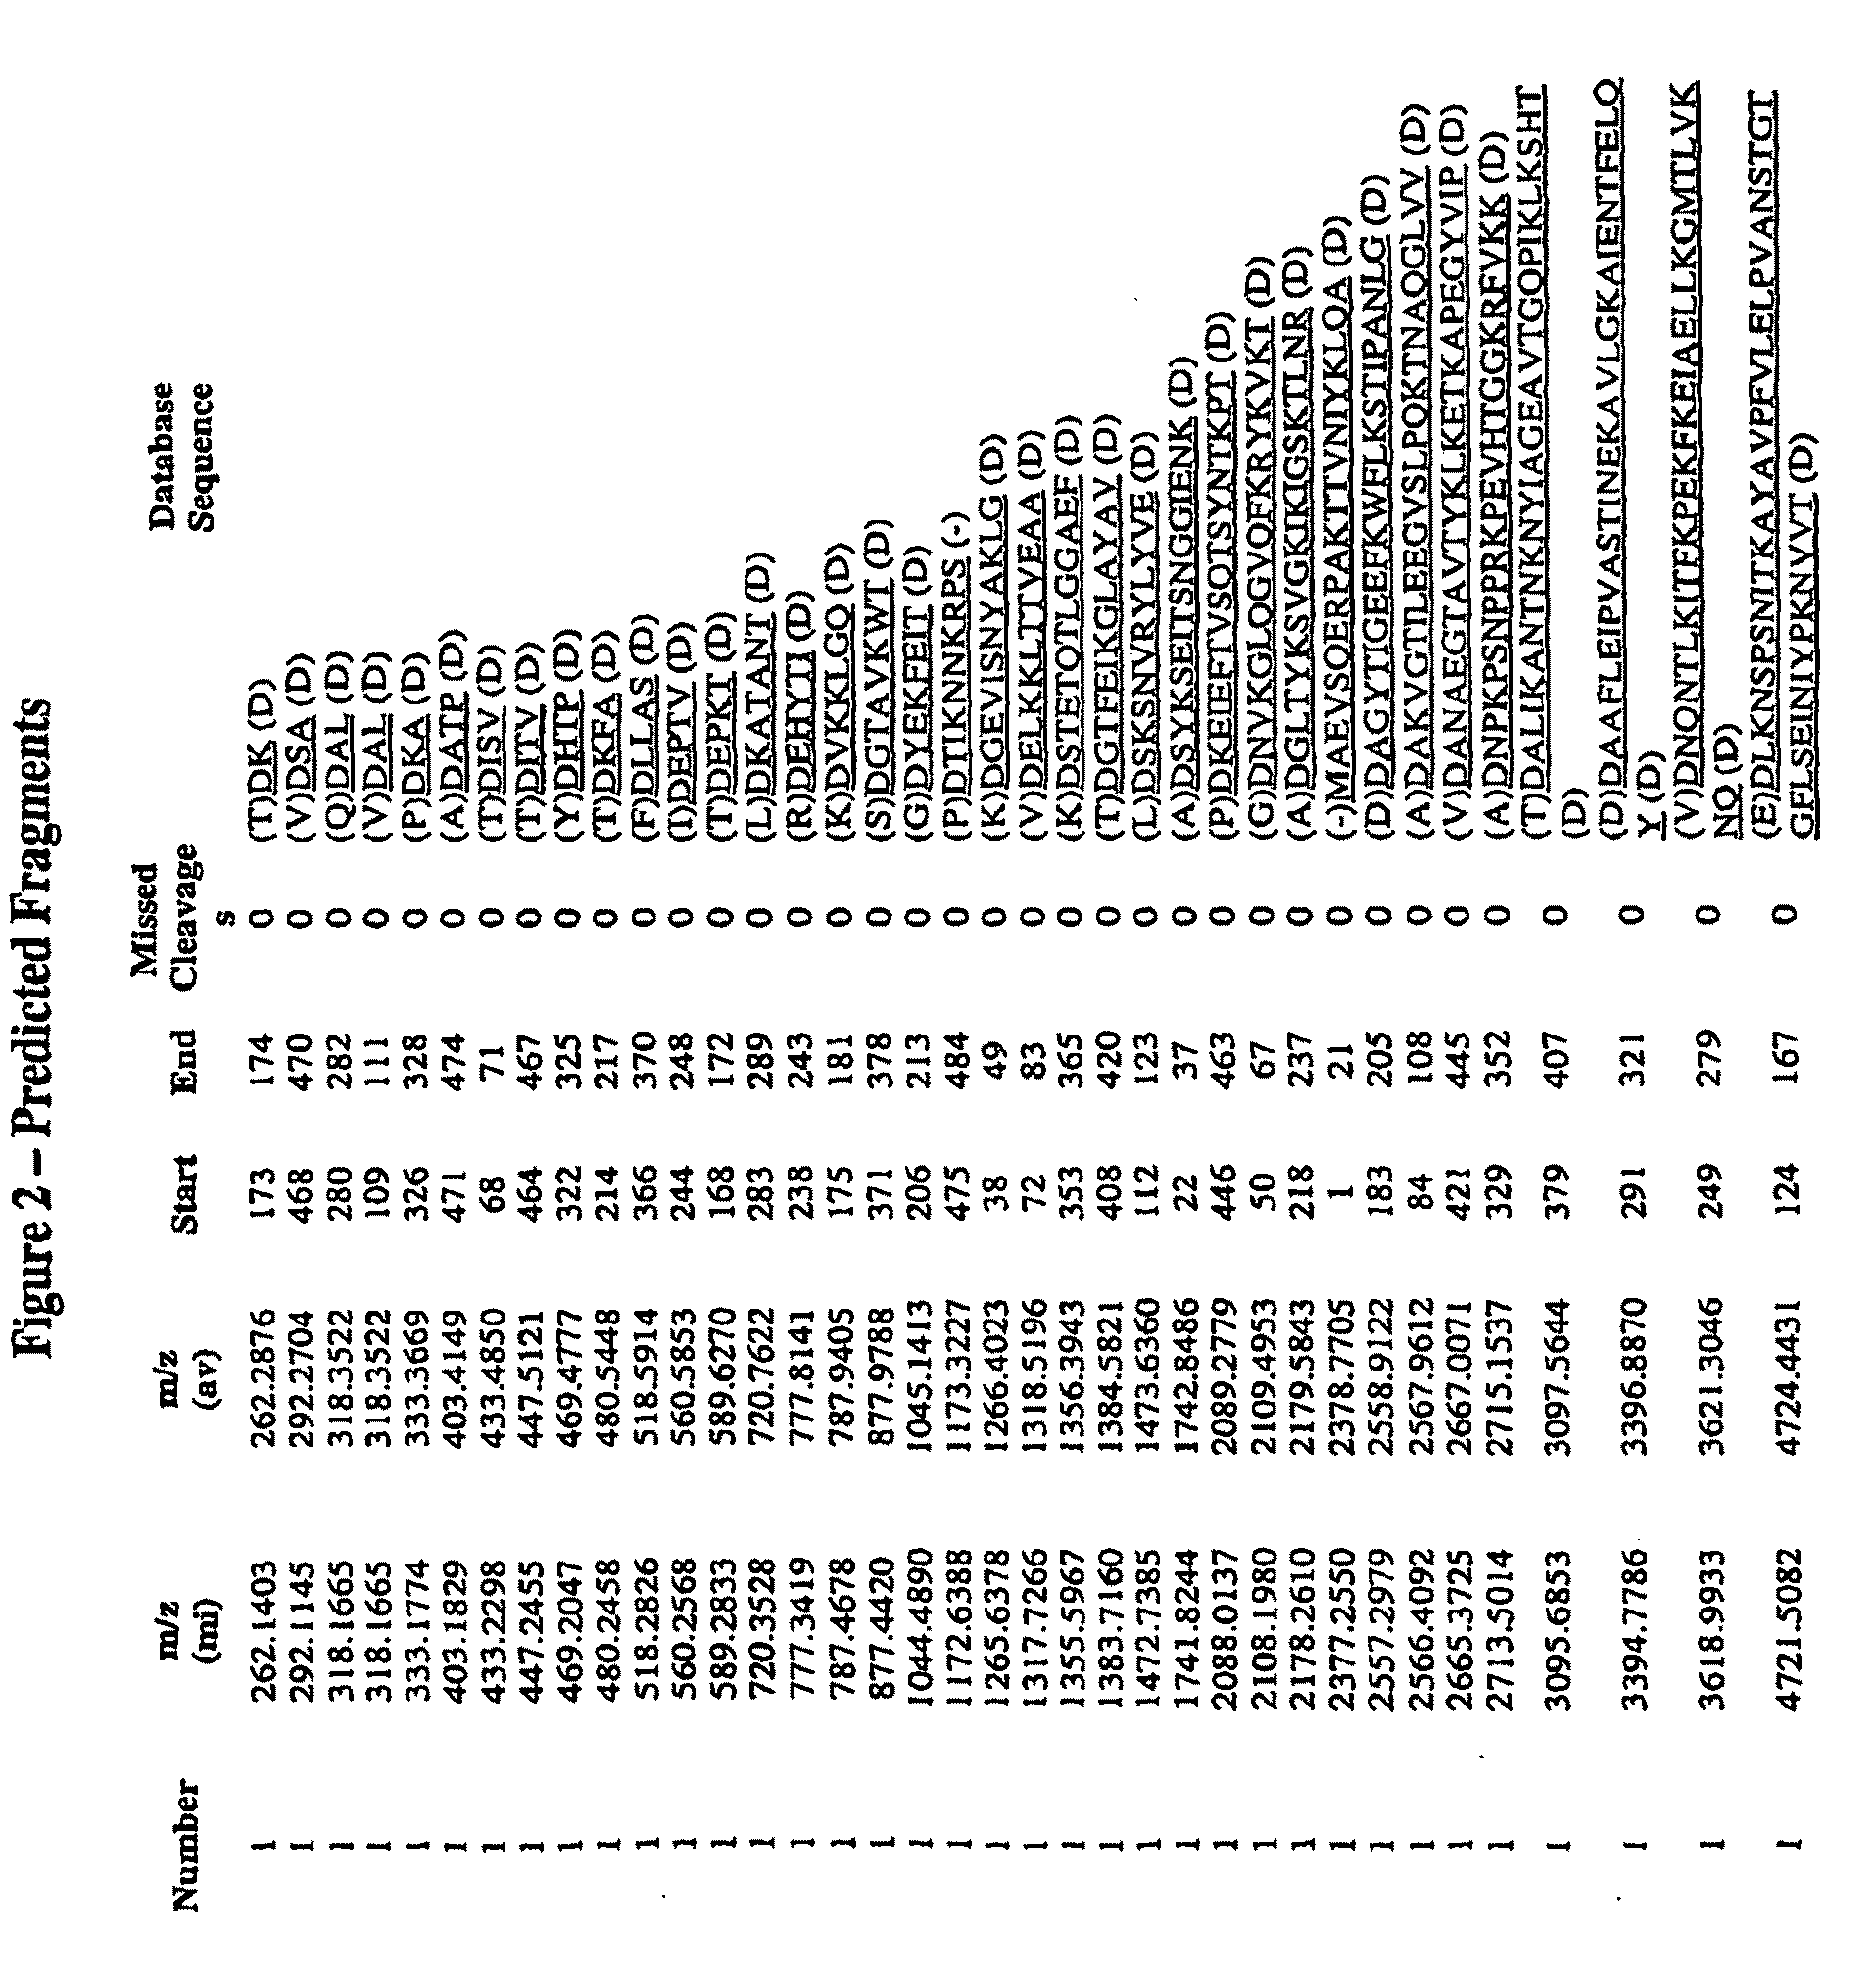 Immunogenic compositions for streptococcus agalactiae